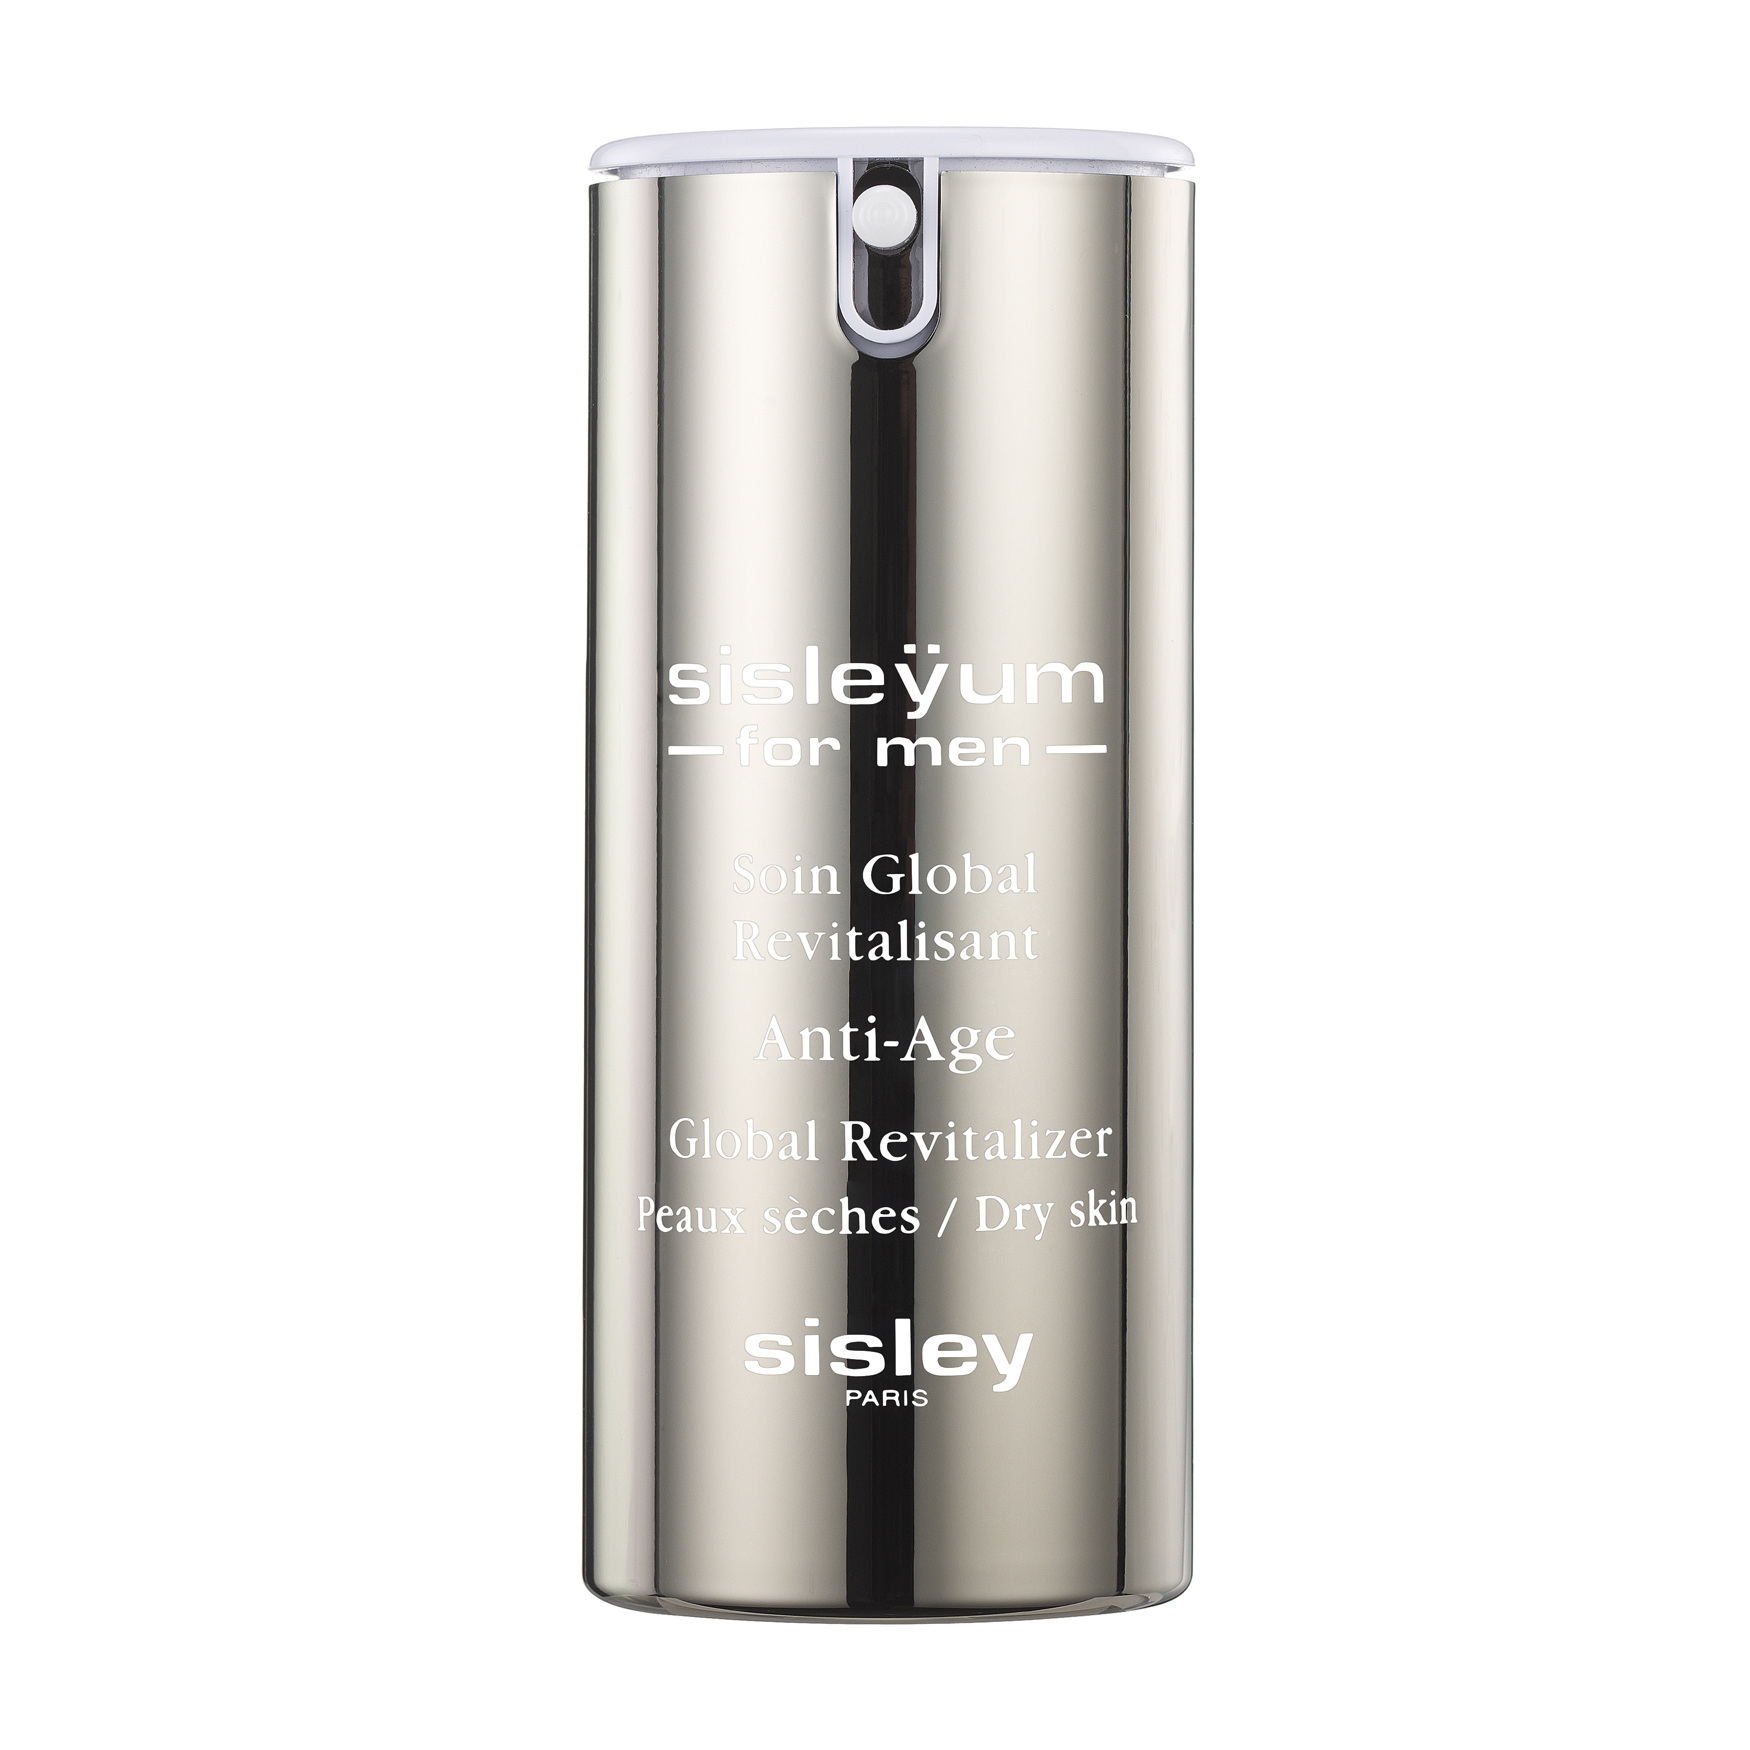 Sisley-Paris Sisleyum for Men Dry Skin 1.7fl.oz | Space NK